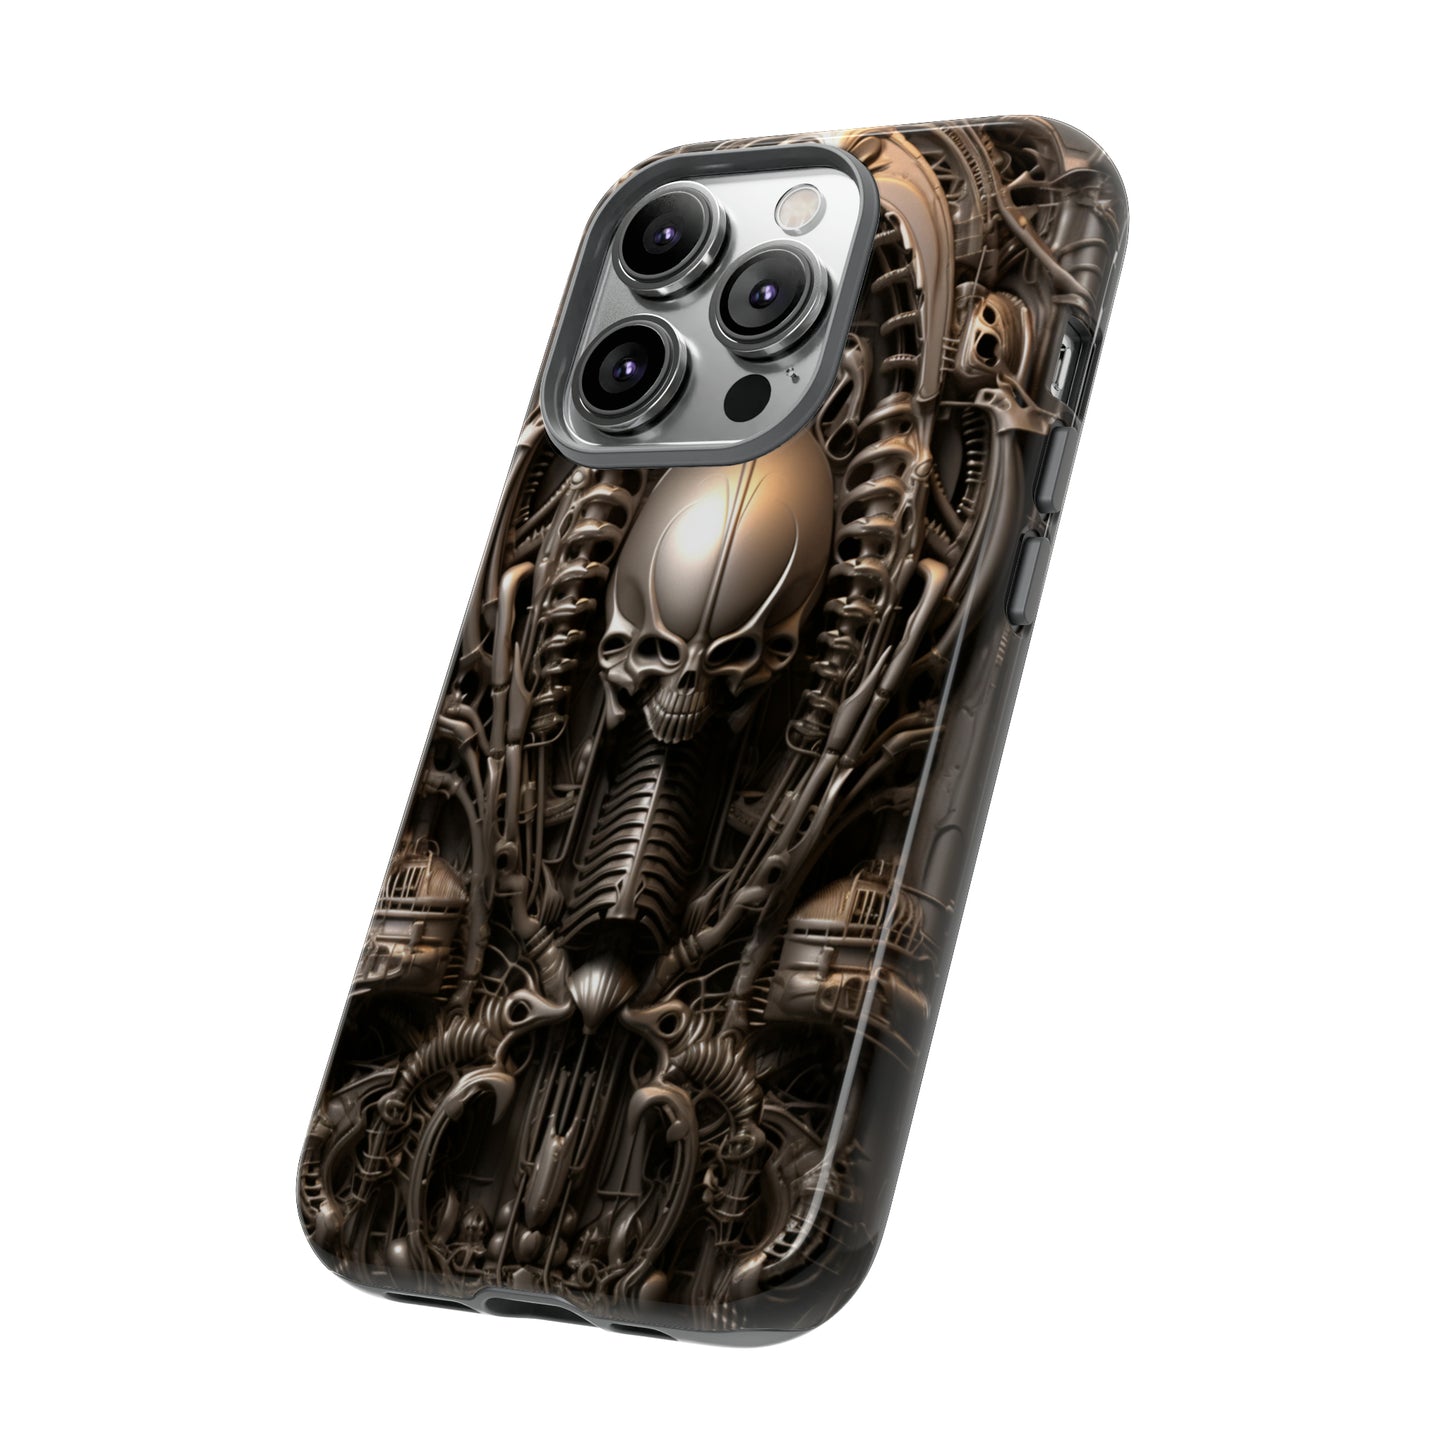 Retro alien aesthetic phone case for iPhone 12